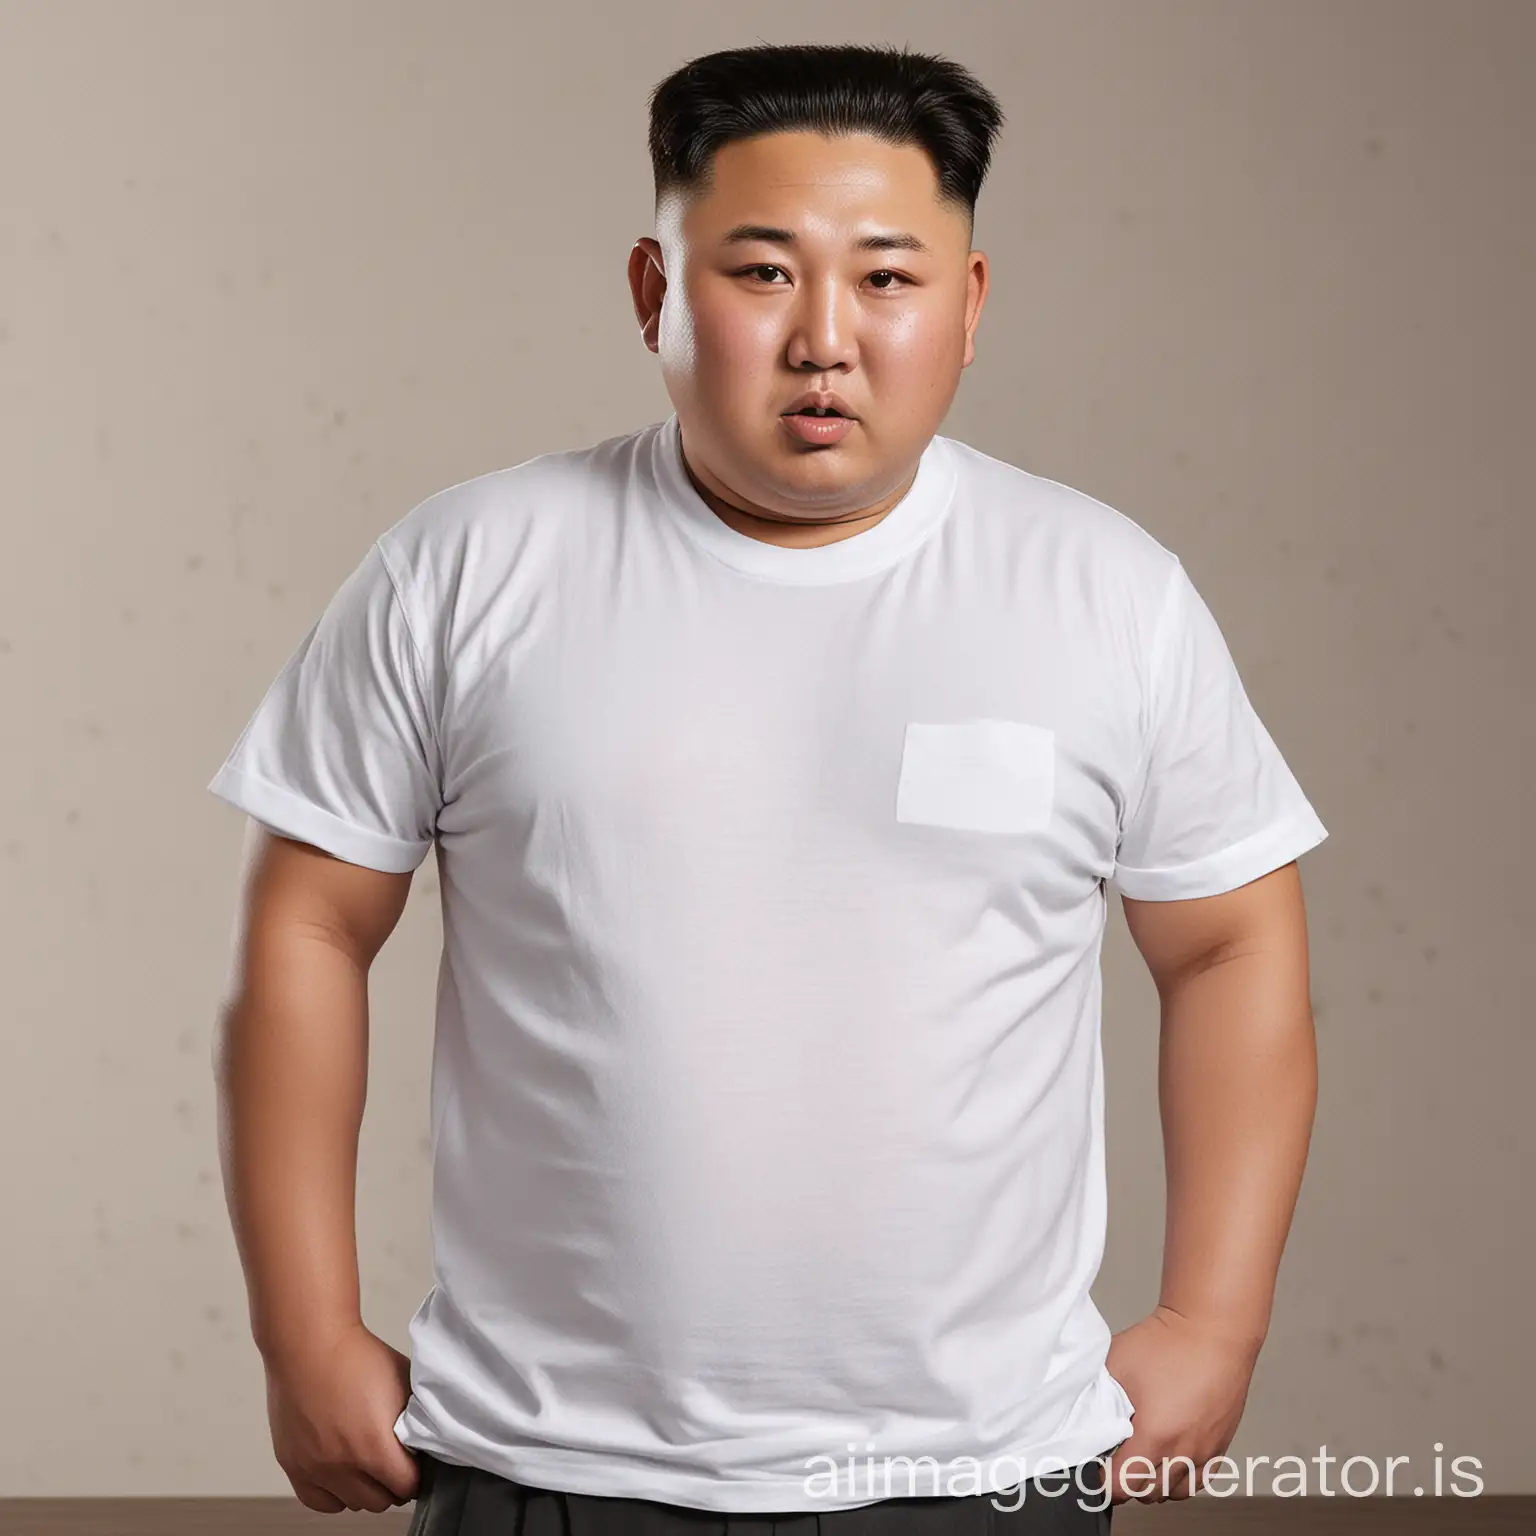 Kim-Jong-Un-Portrait-in-White-TShirt-North-Korean-Leader-in-Casual-Attire